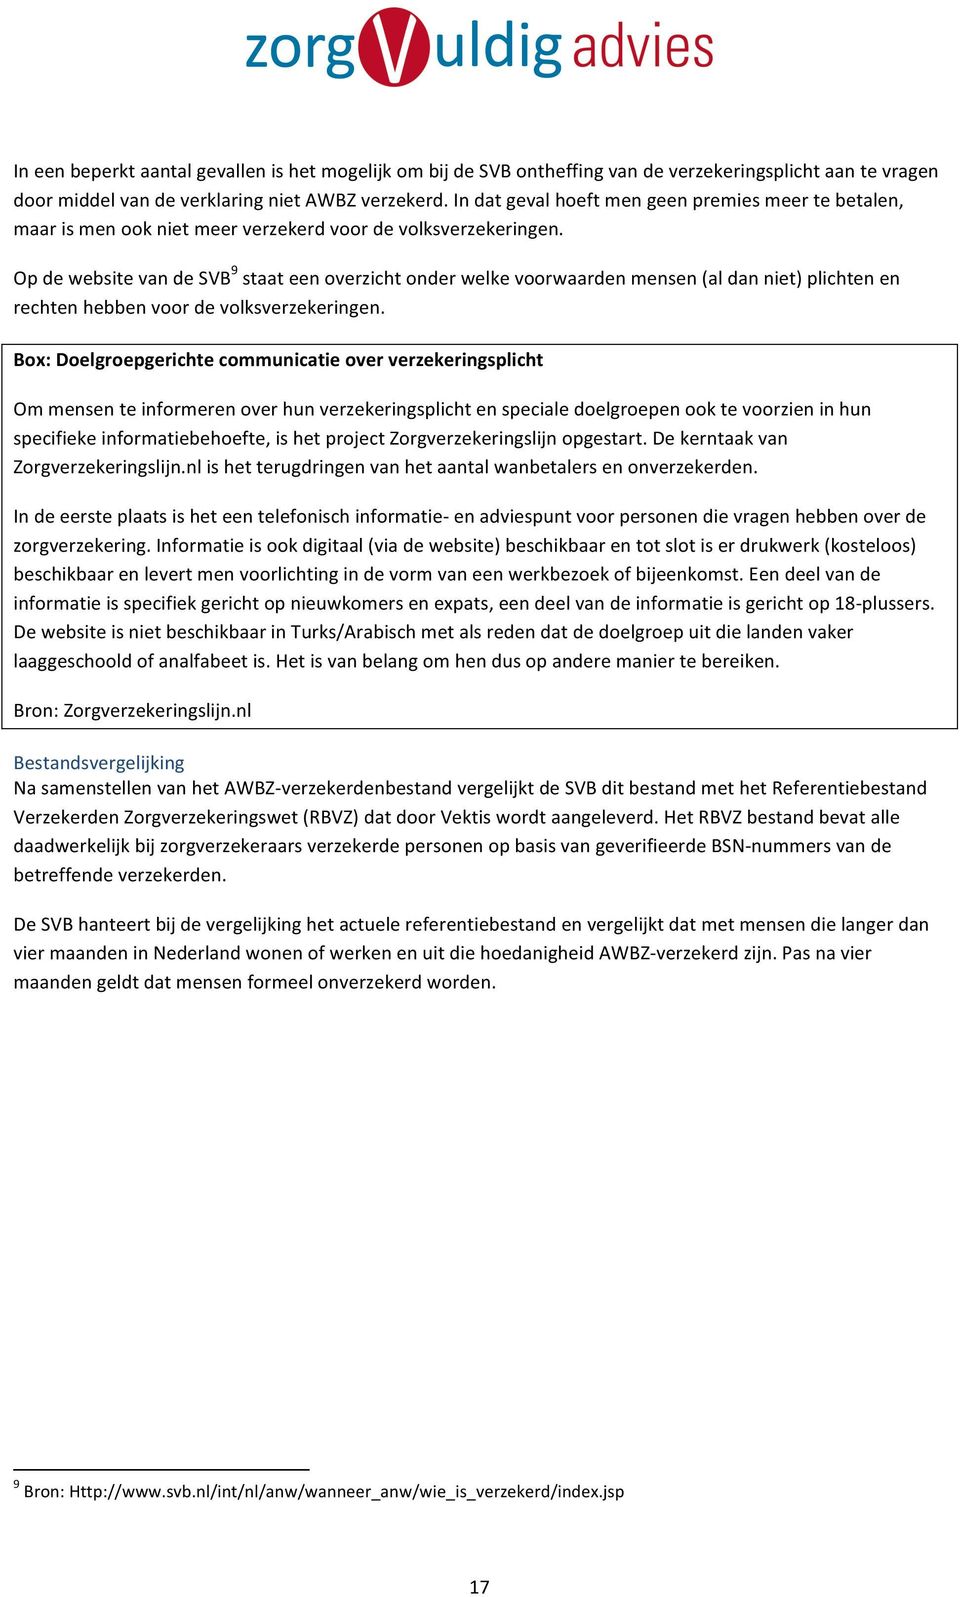 9 OpdewebsitevandeSVB staateenoverzichtonderwelkevoorwaardenmensen(aldanniet)plichtenen rechtenhebbenvoordevolksverzekeringen.